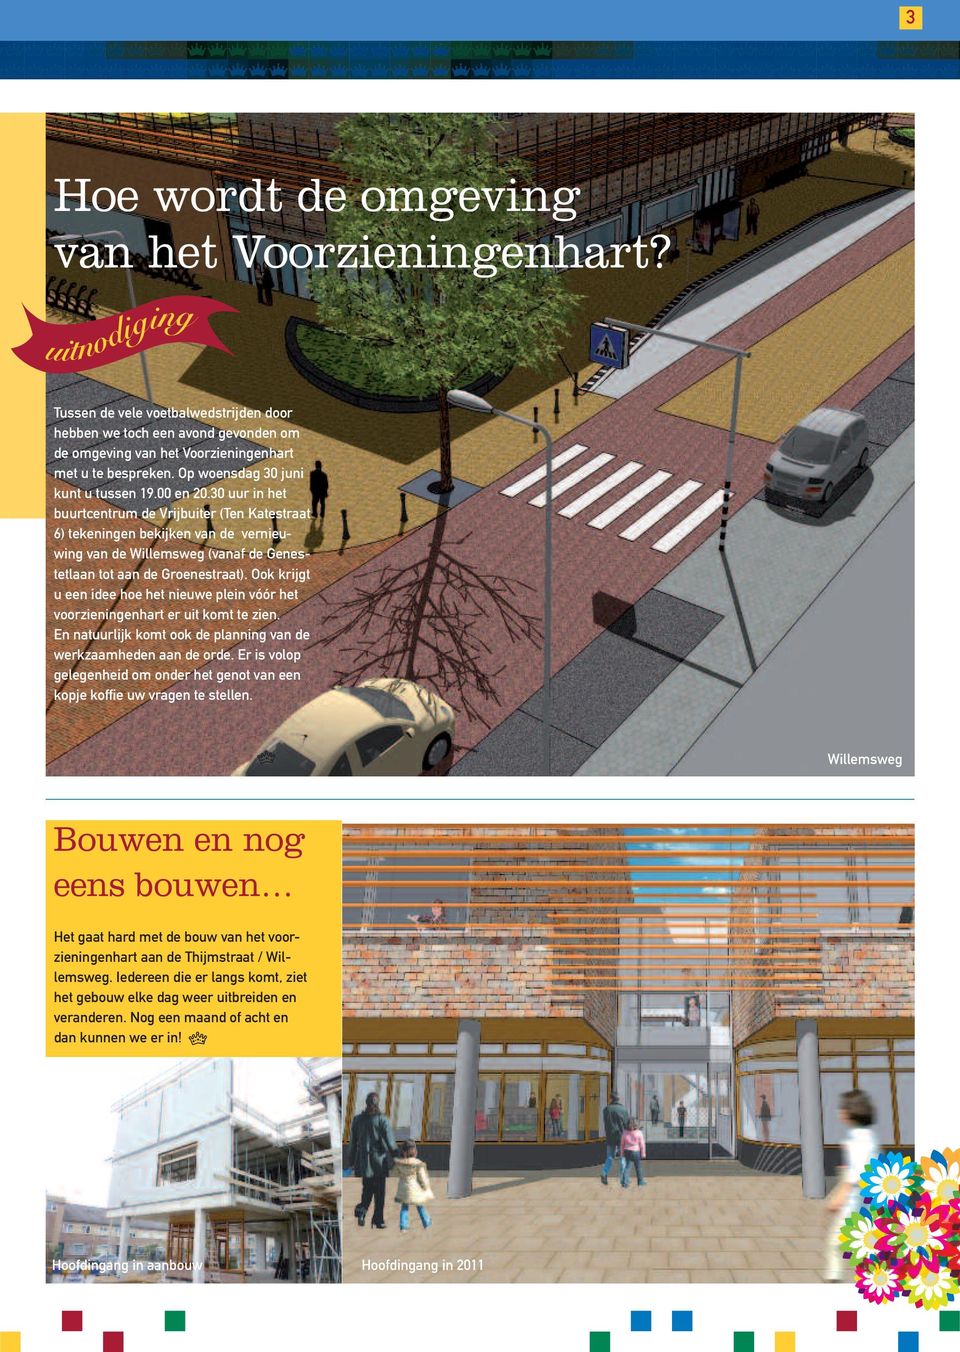 30 uur in het buurtcentrum de Vrijbuiter (Ten Katestraat 6) tekeningen bekijken van de vernieuwing van de Willemsweg (vanaf de Genestetlaan tot aan de Groenestraat).